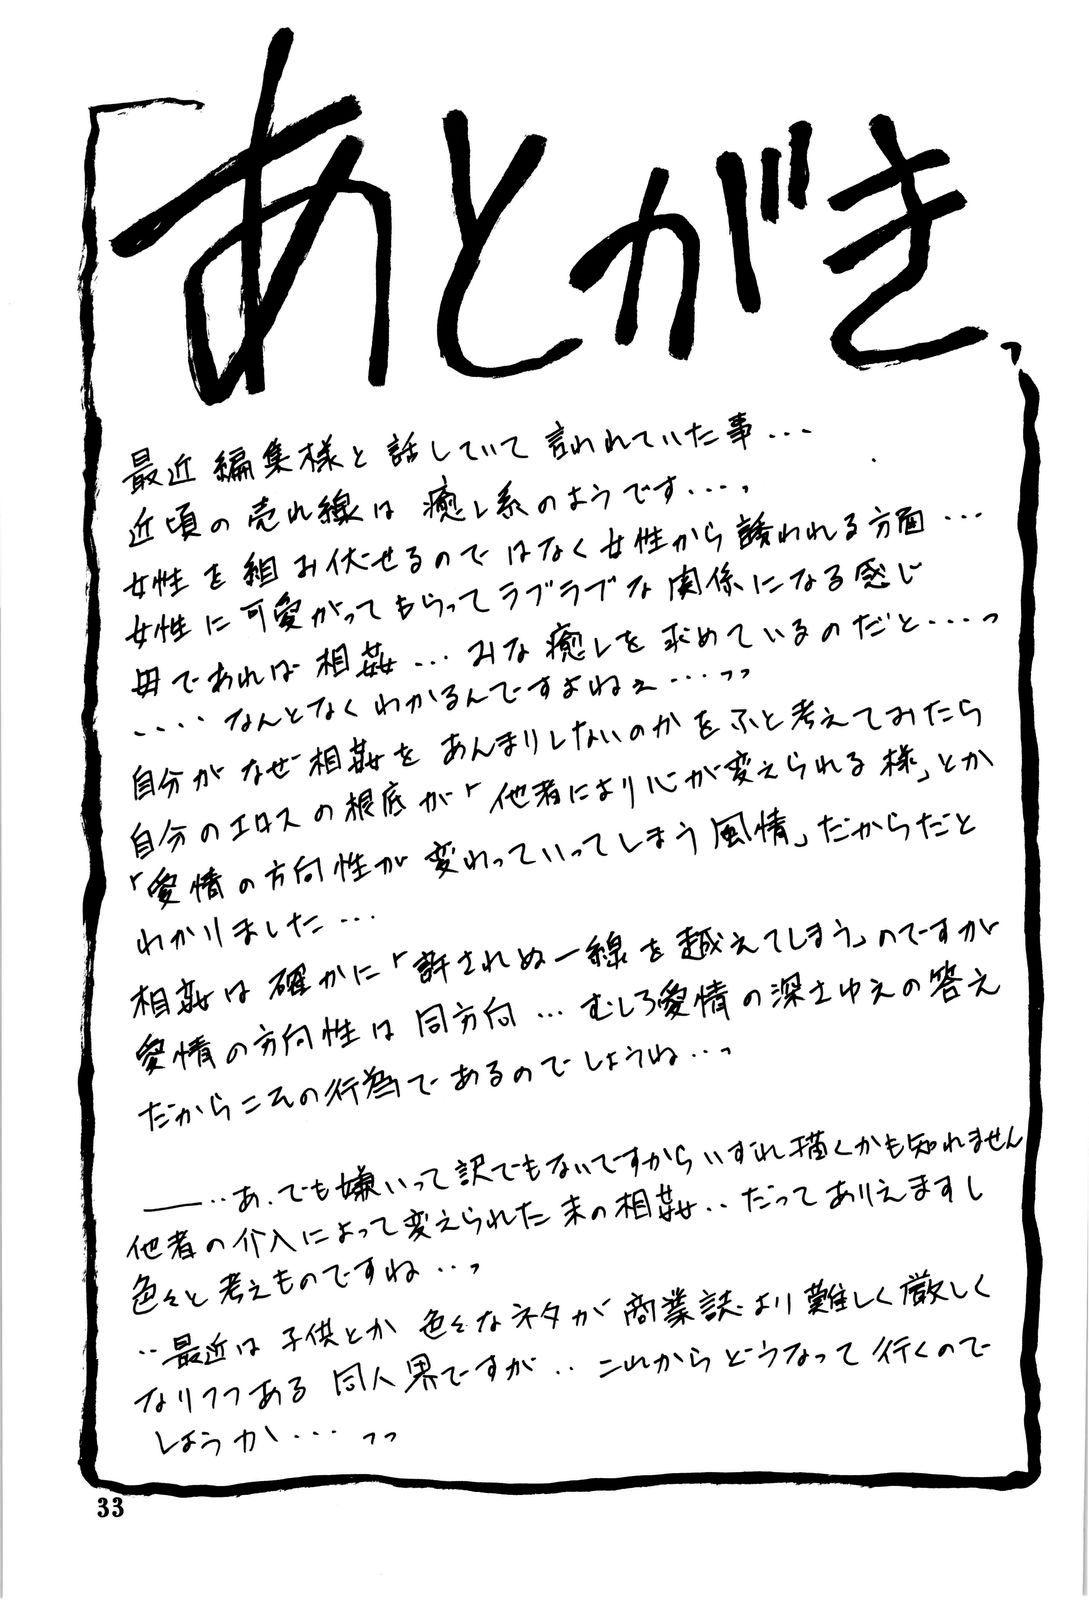 Yama Hime No Hana 1 Manga Page 33 Read Manga Yama Hime No Hana 1 Online For Free 1964